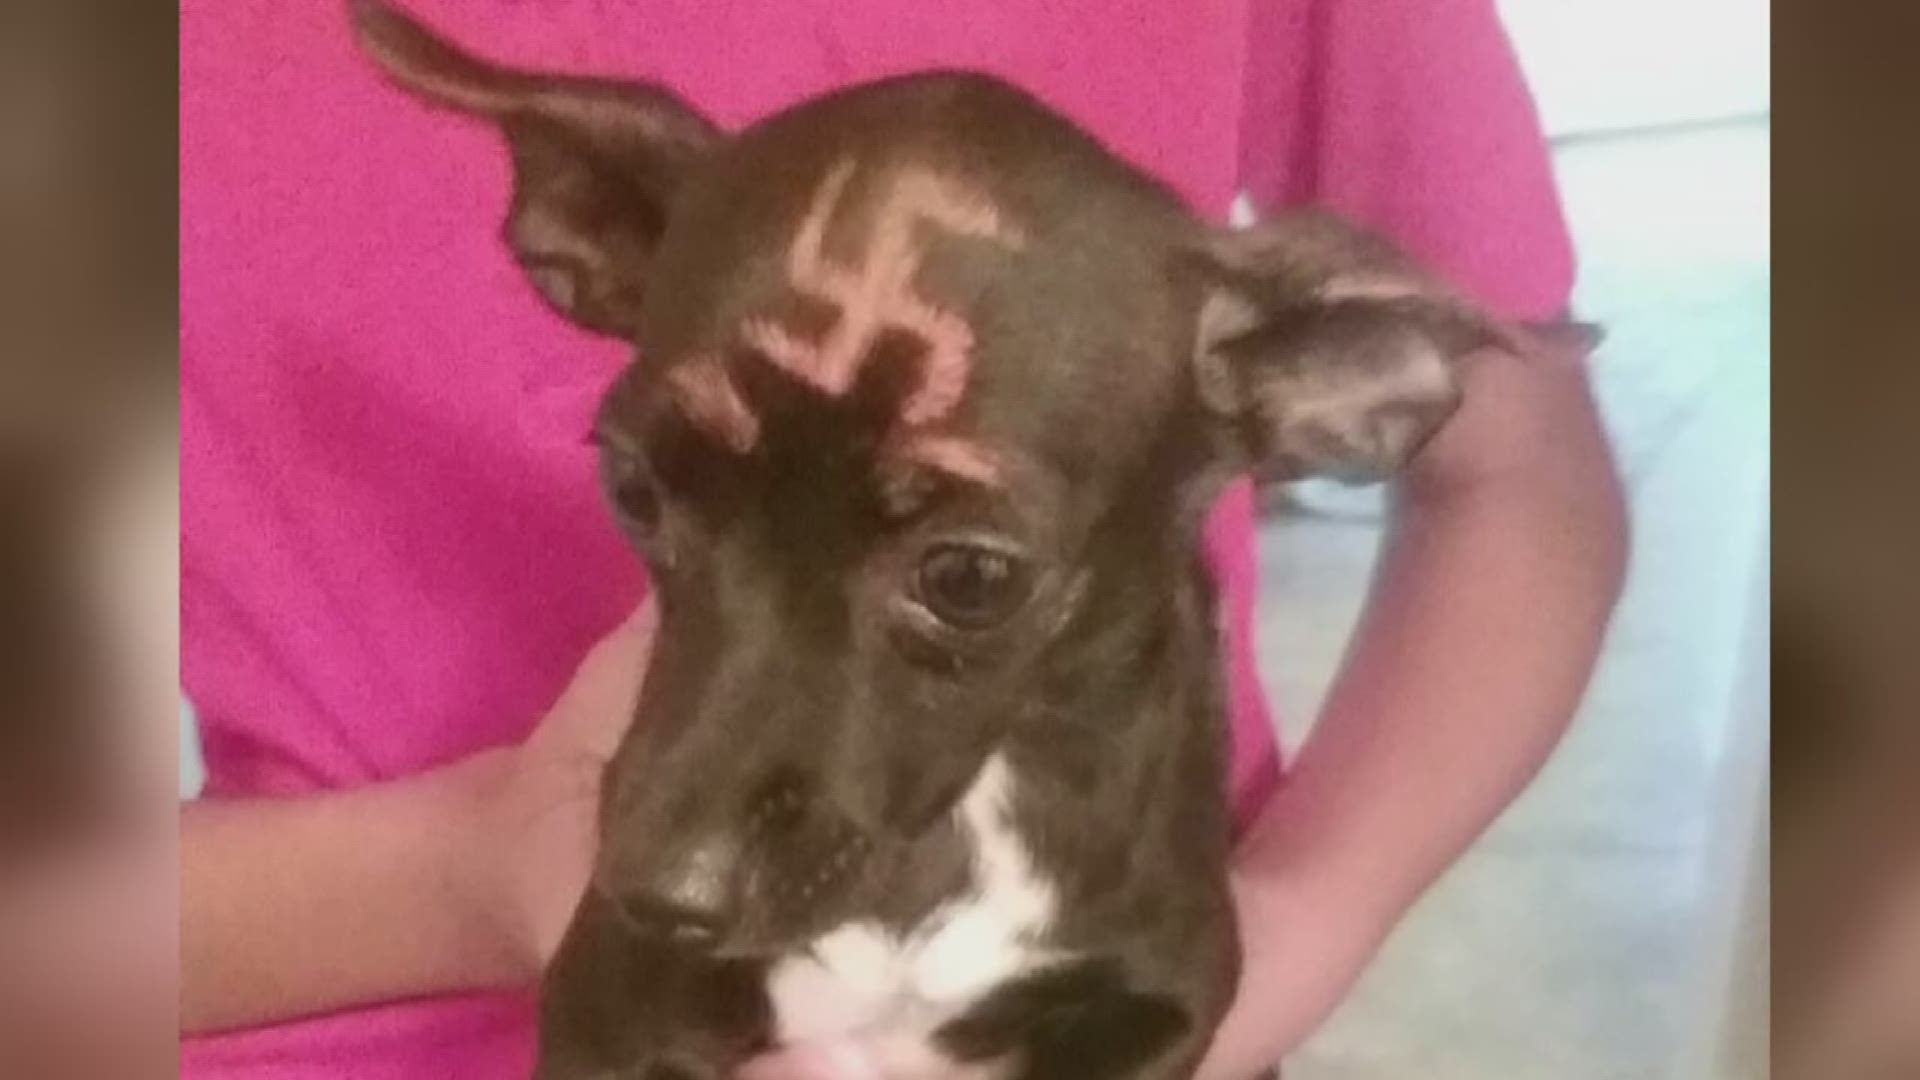 Neighbors paint swastika on dog's head